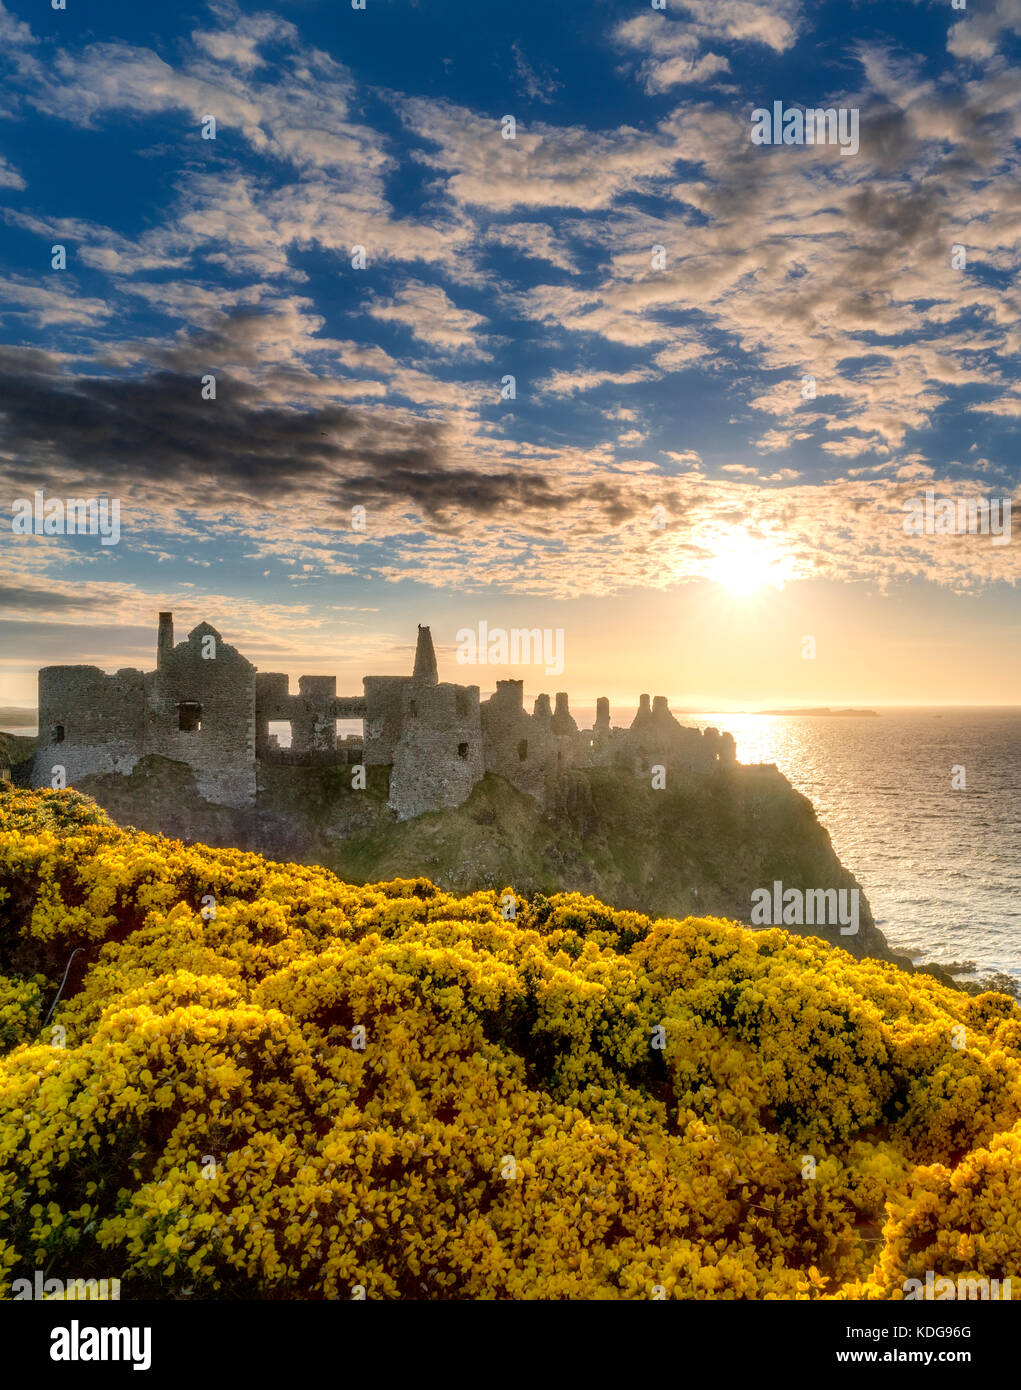 Le château de dunluce, au coucher du soleil de fleurs de l'ajonc. L'Irlande du Nord. Banque D'Images